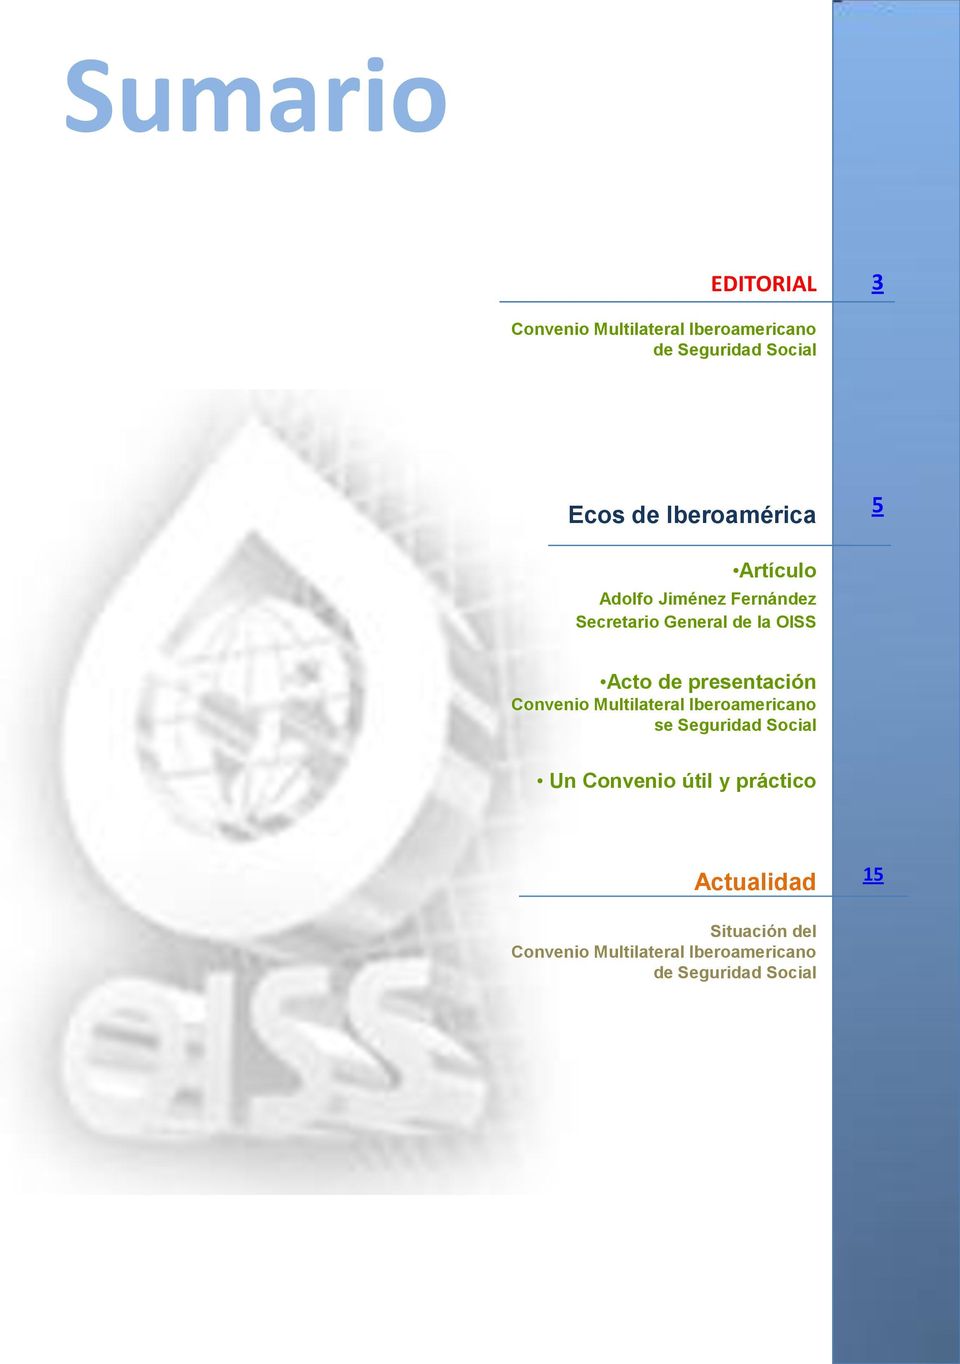 presentación Convenio Multilateral Iberoamericano se Seguridad Social Un Convenio